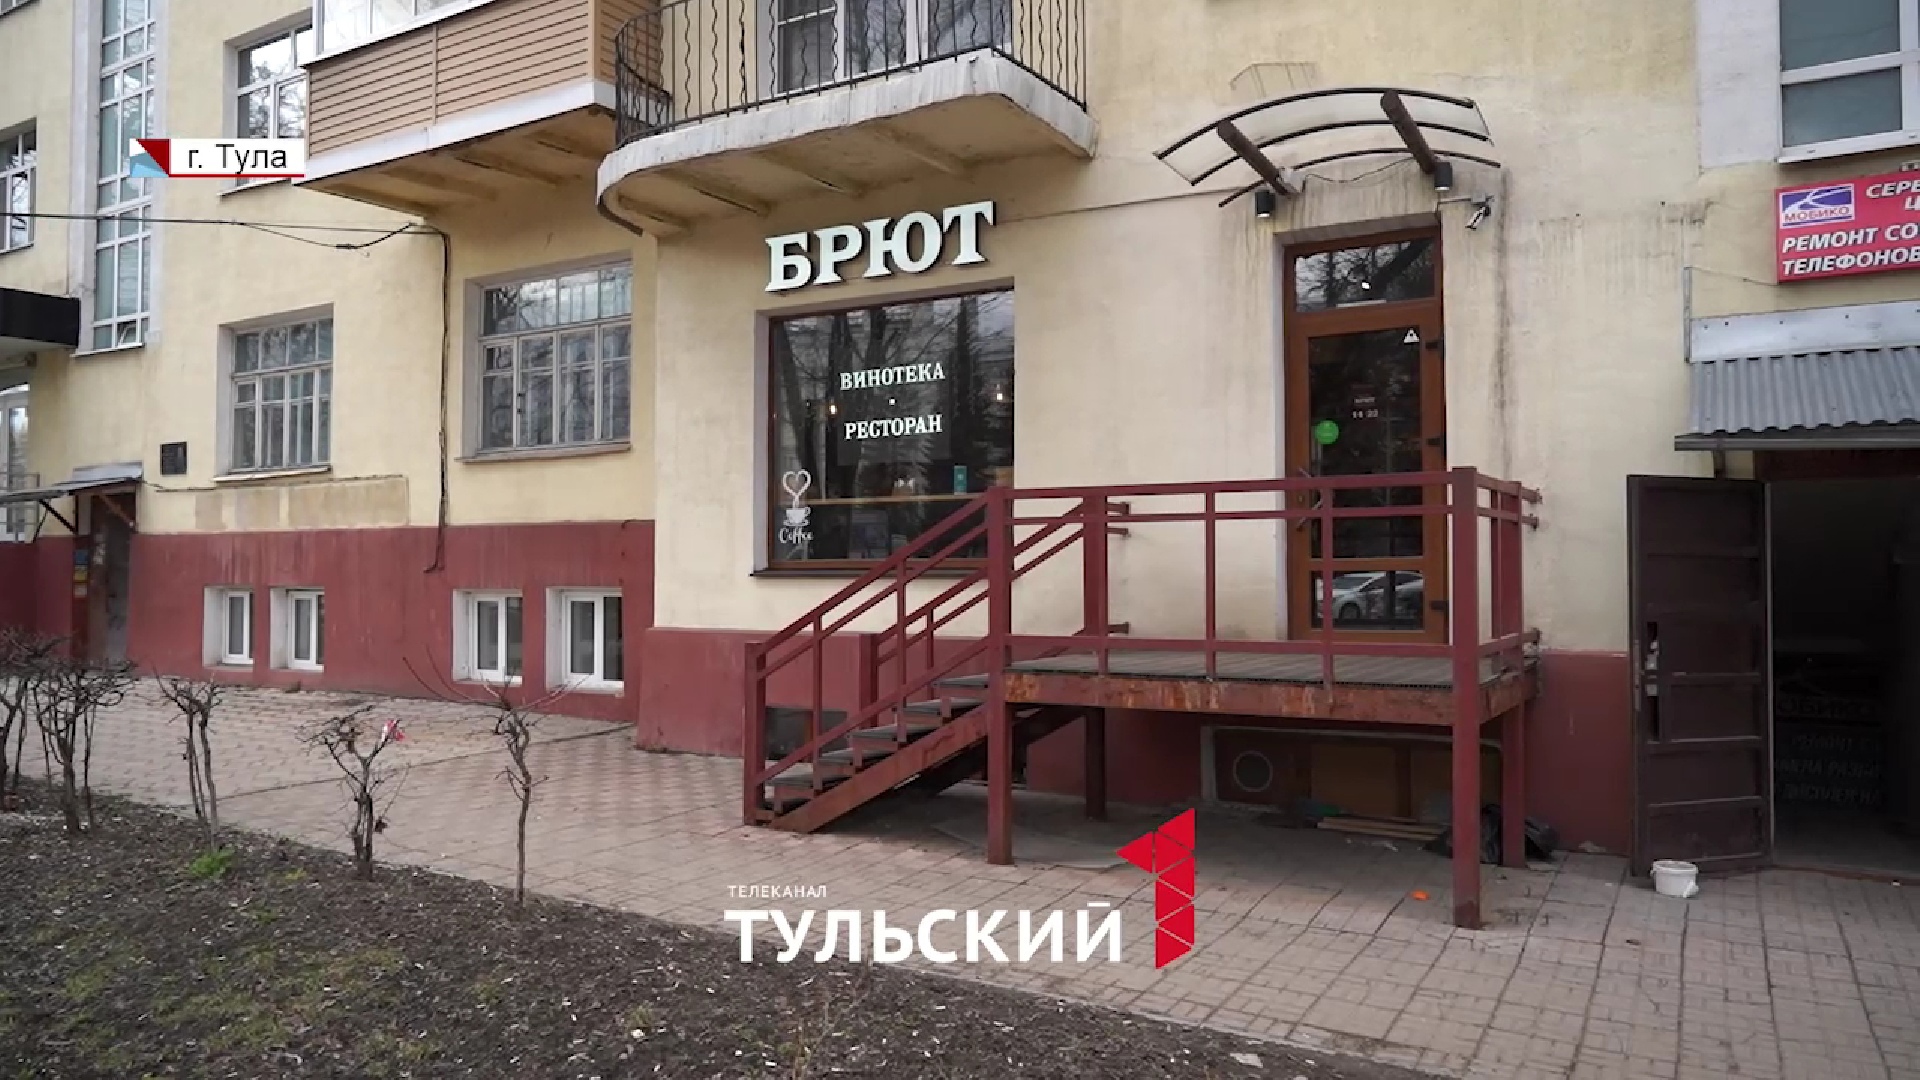 Жители проспекта Ленина в Туле жалуются на шум и запах жареного из-за кафе на первом этаже